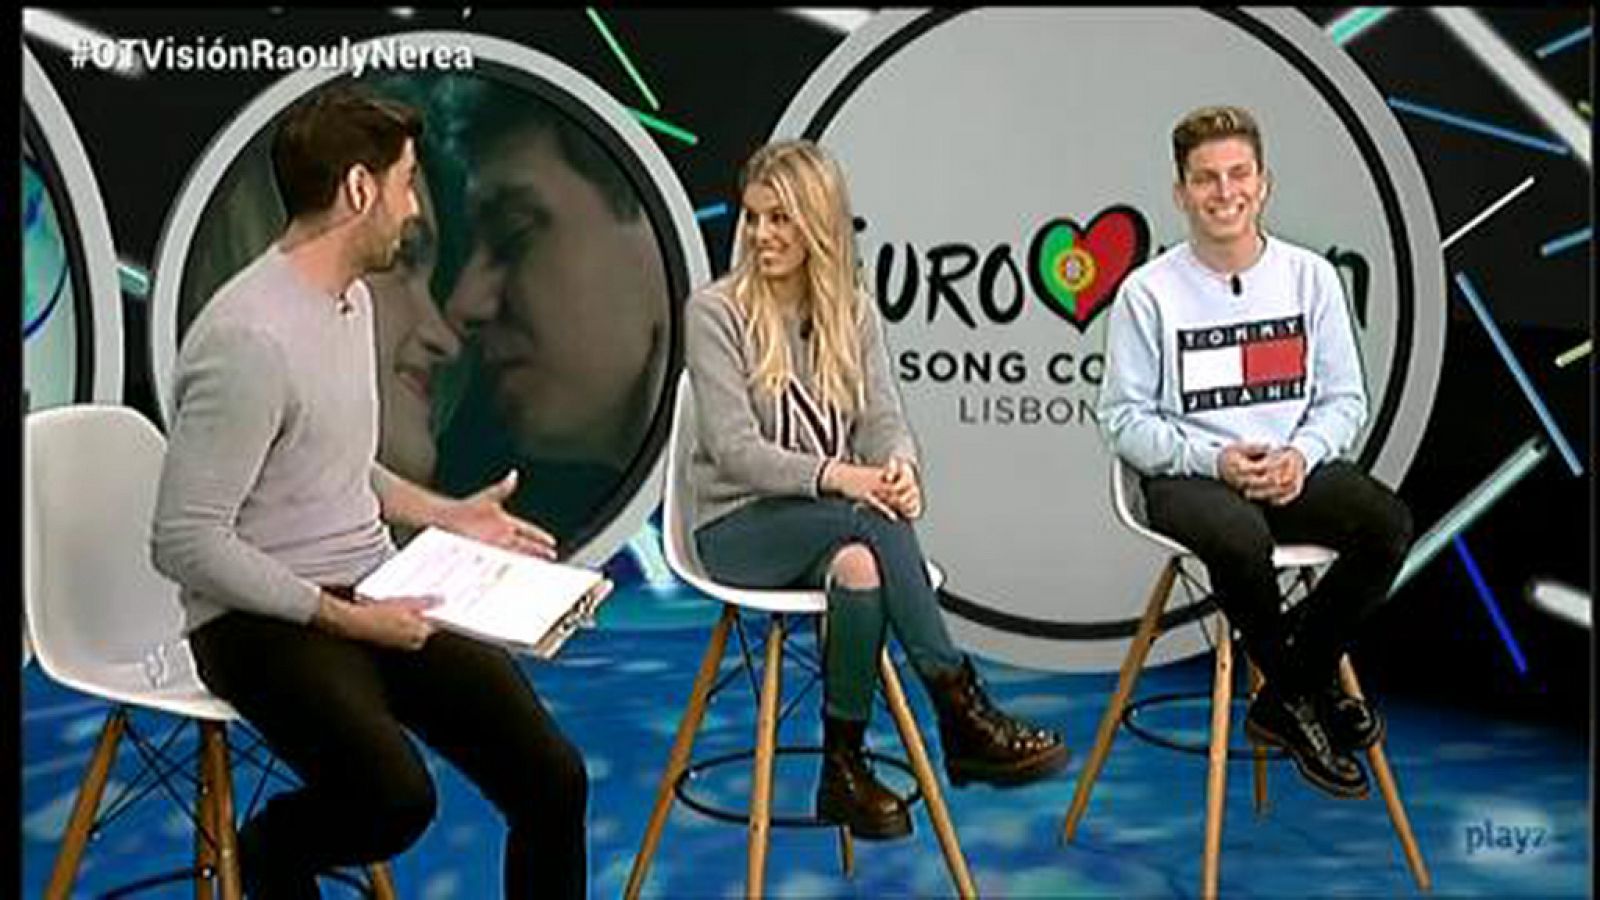 OTVisión - Raoul y Nerea: "Seguro que quedamos en el top 10"